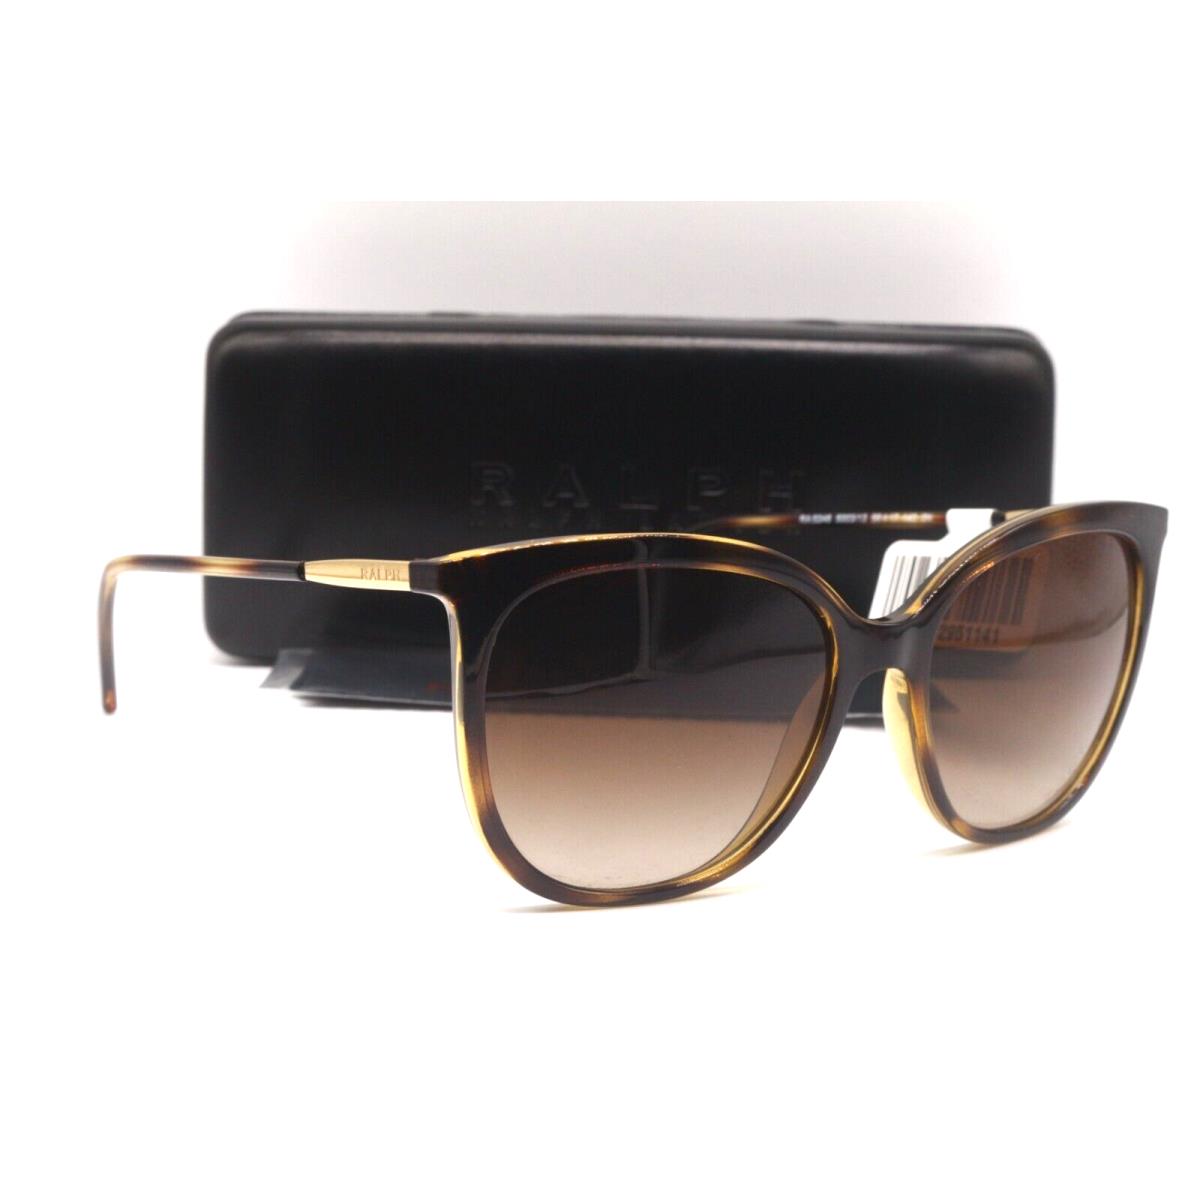 Ralph Lauren RA 5248 5003/13 Havana Gold Gradient Sunglasses 56-17